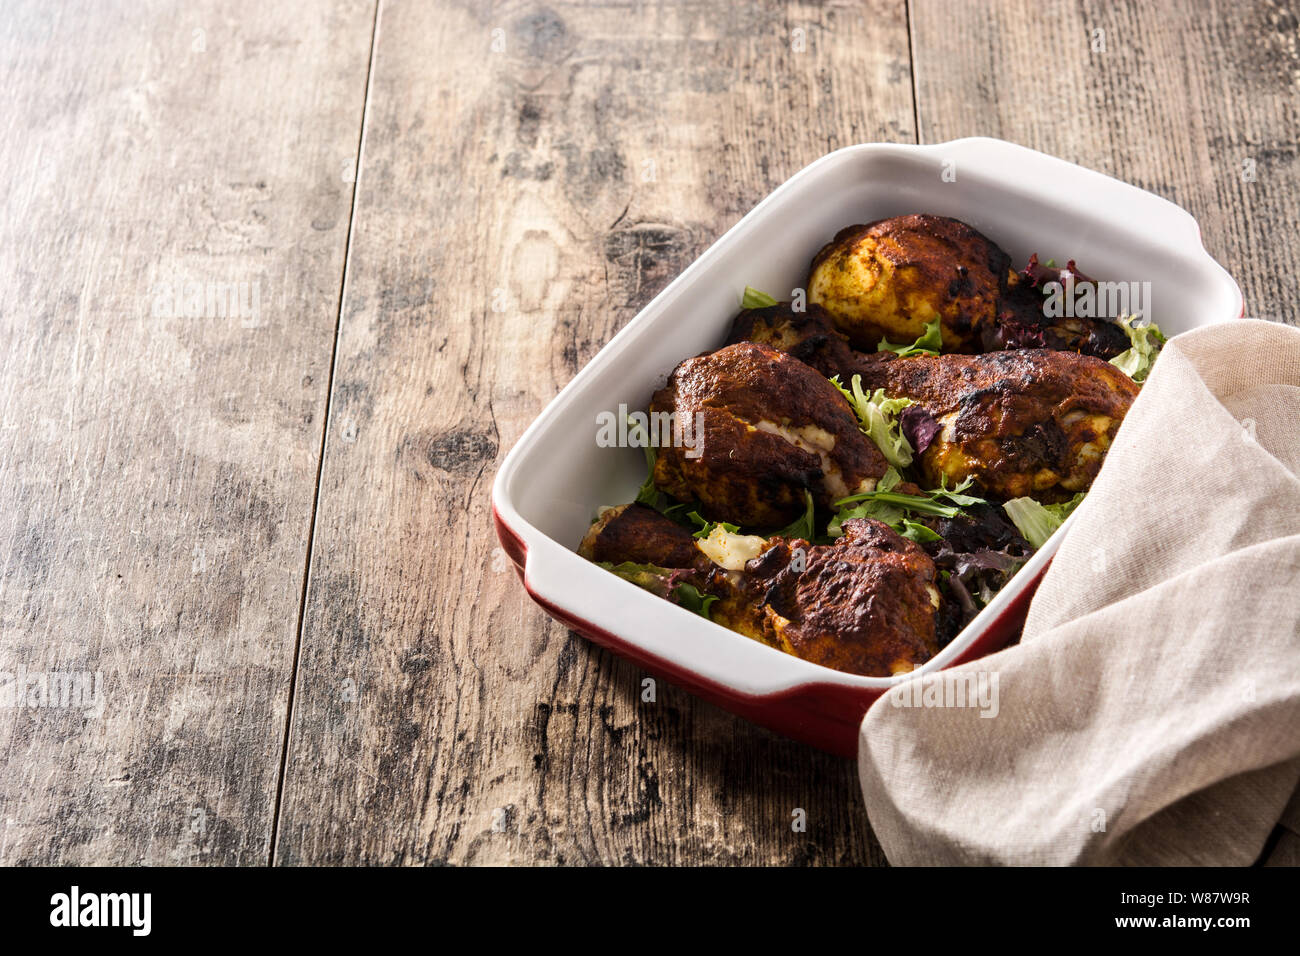 Poulet tandoori grillés avec du riz basmati sur table en bois. Copyspace Banque D'Images